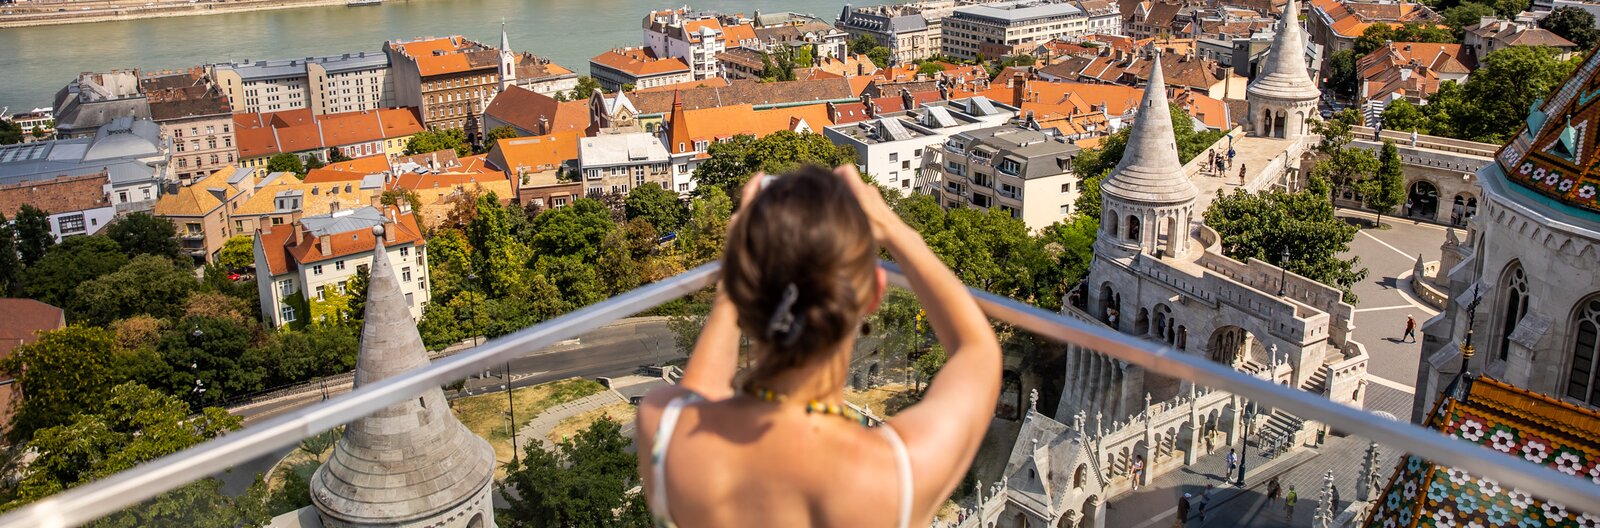 Lazítás háztetők fölött – Budapesti rooftop bárokat ajánlunk